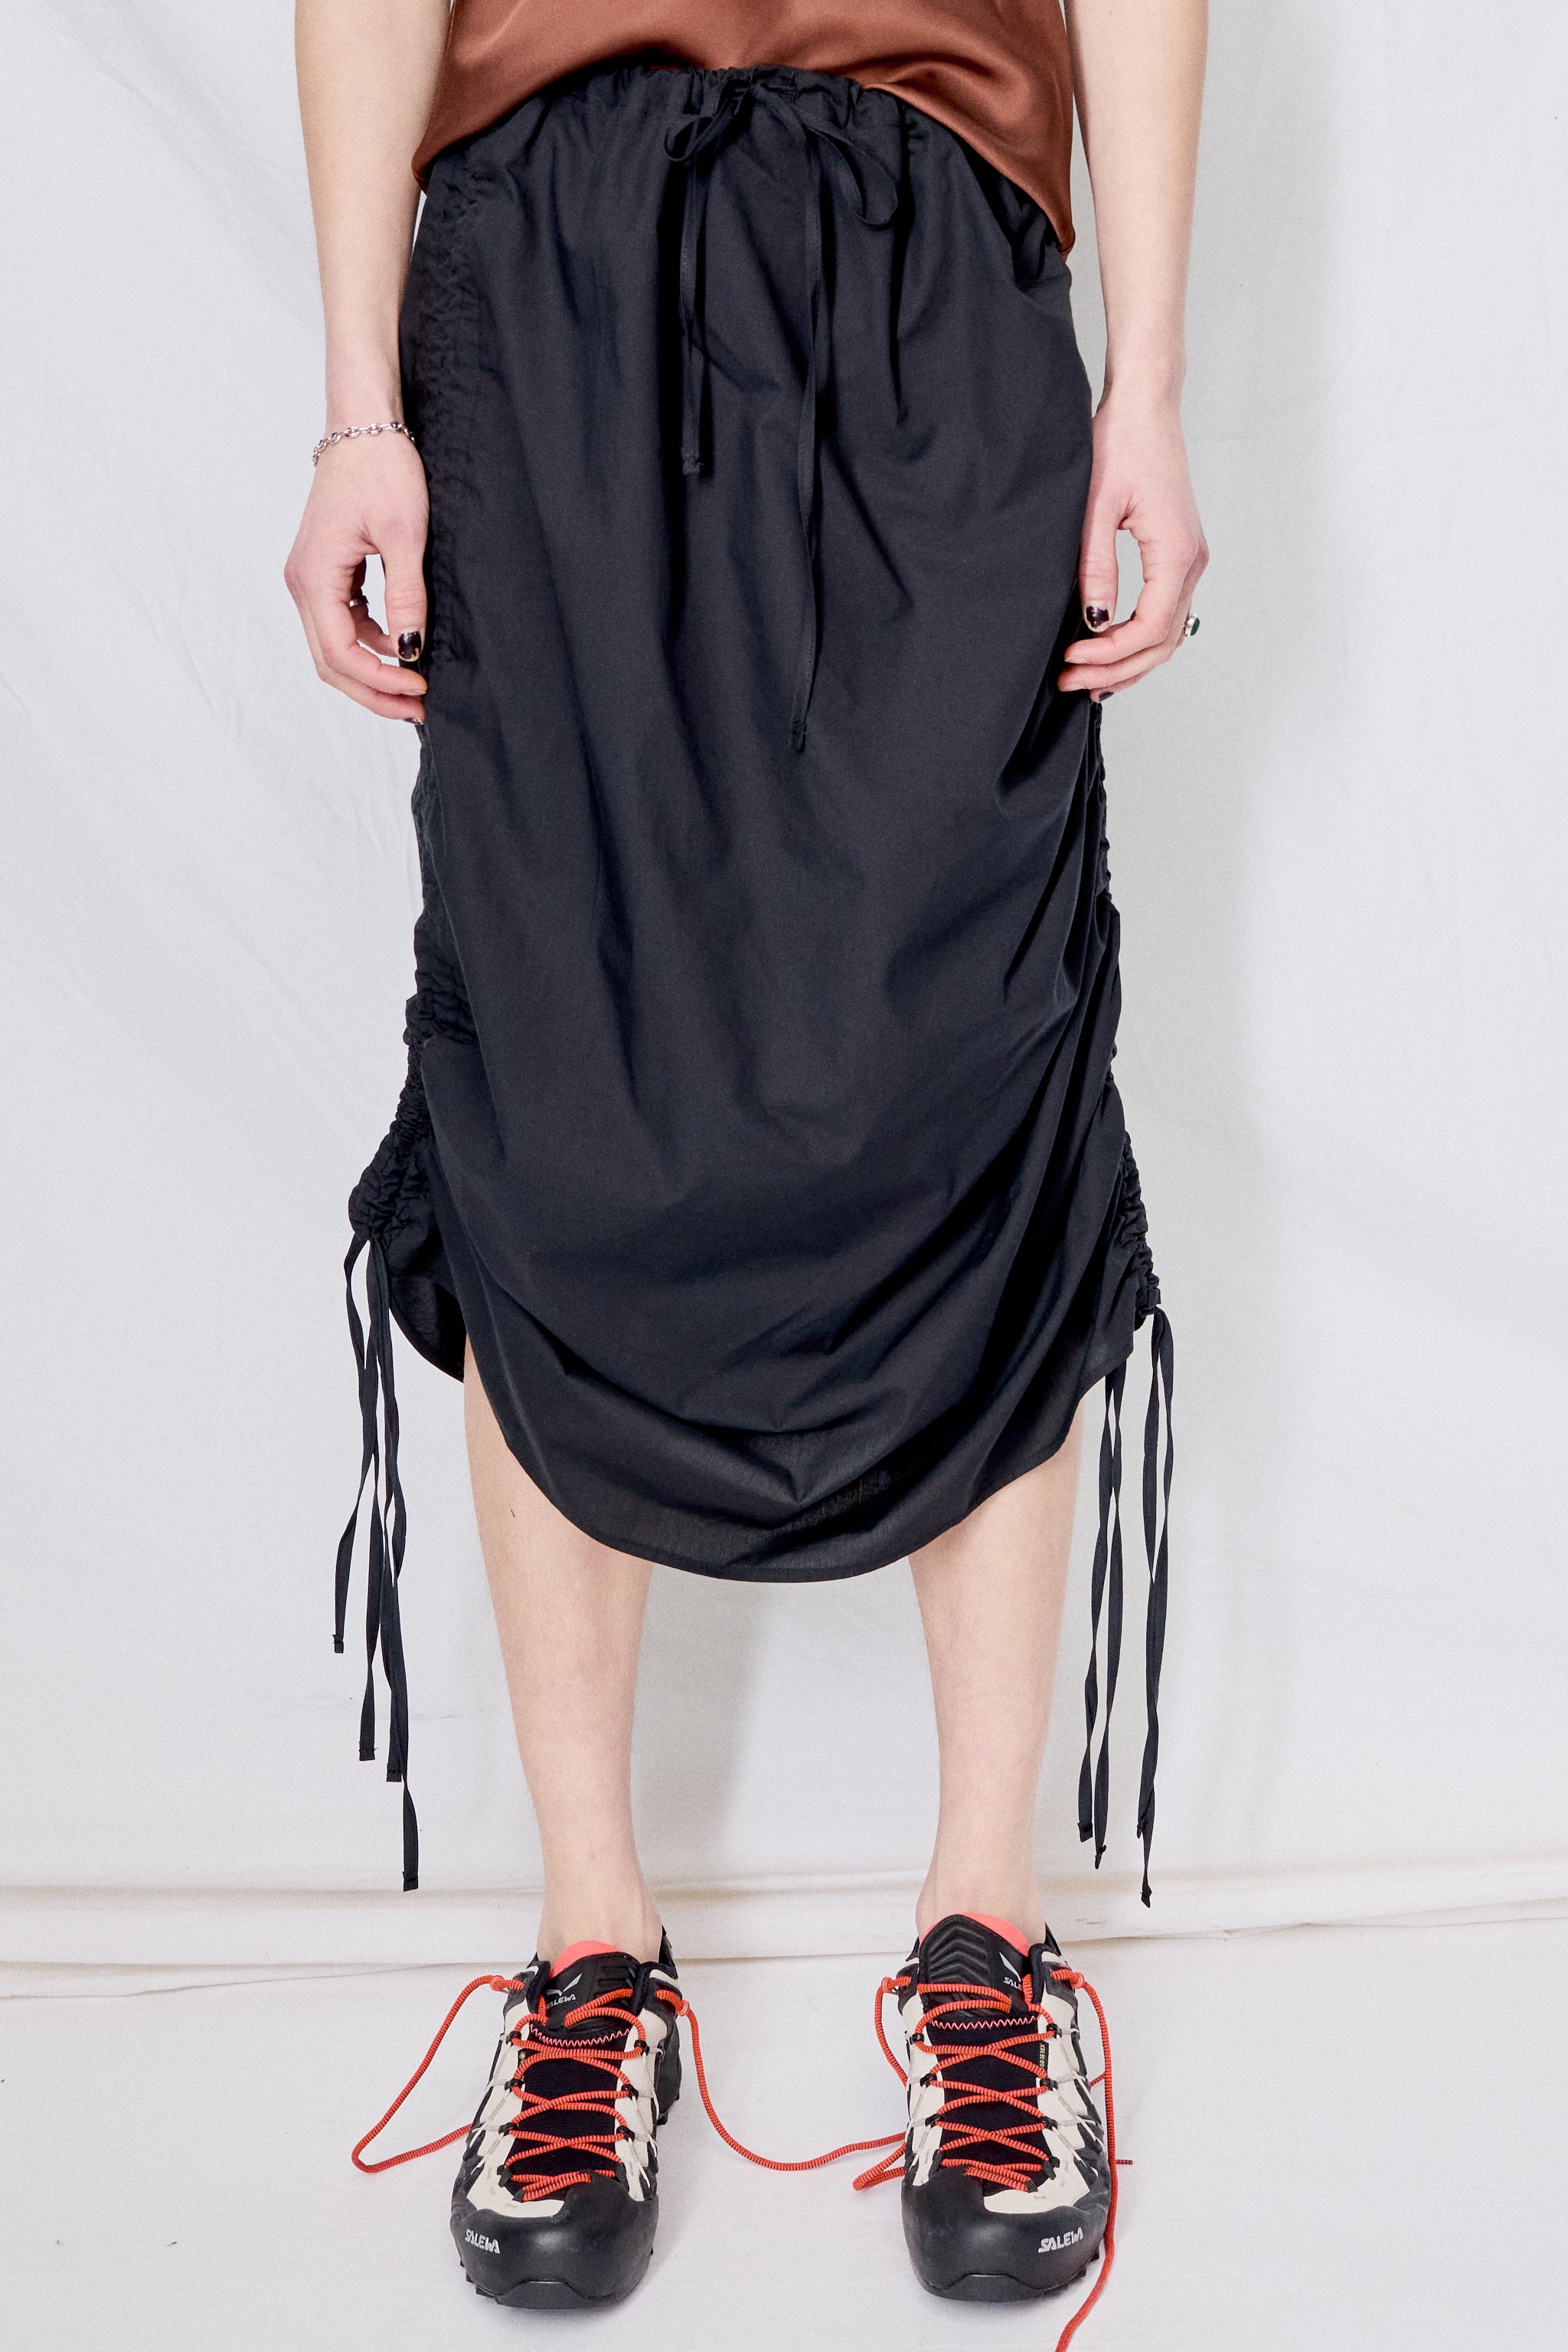 Black Pictorial Strap Skirt